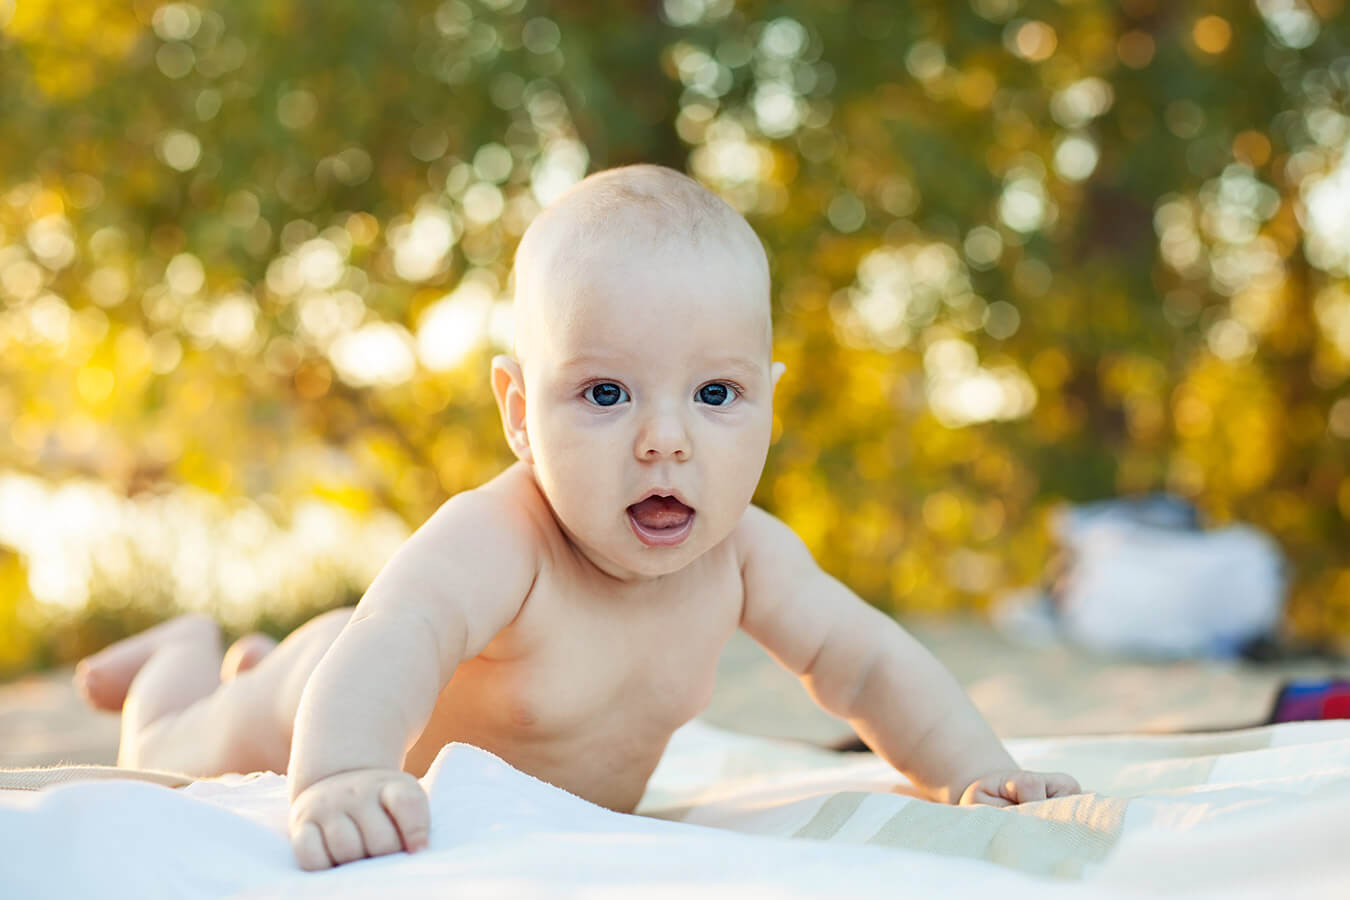 17 tygodniowe dziecko – Jak wygląda 17 tydzień życia dziecka?